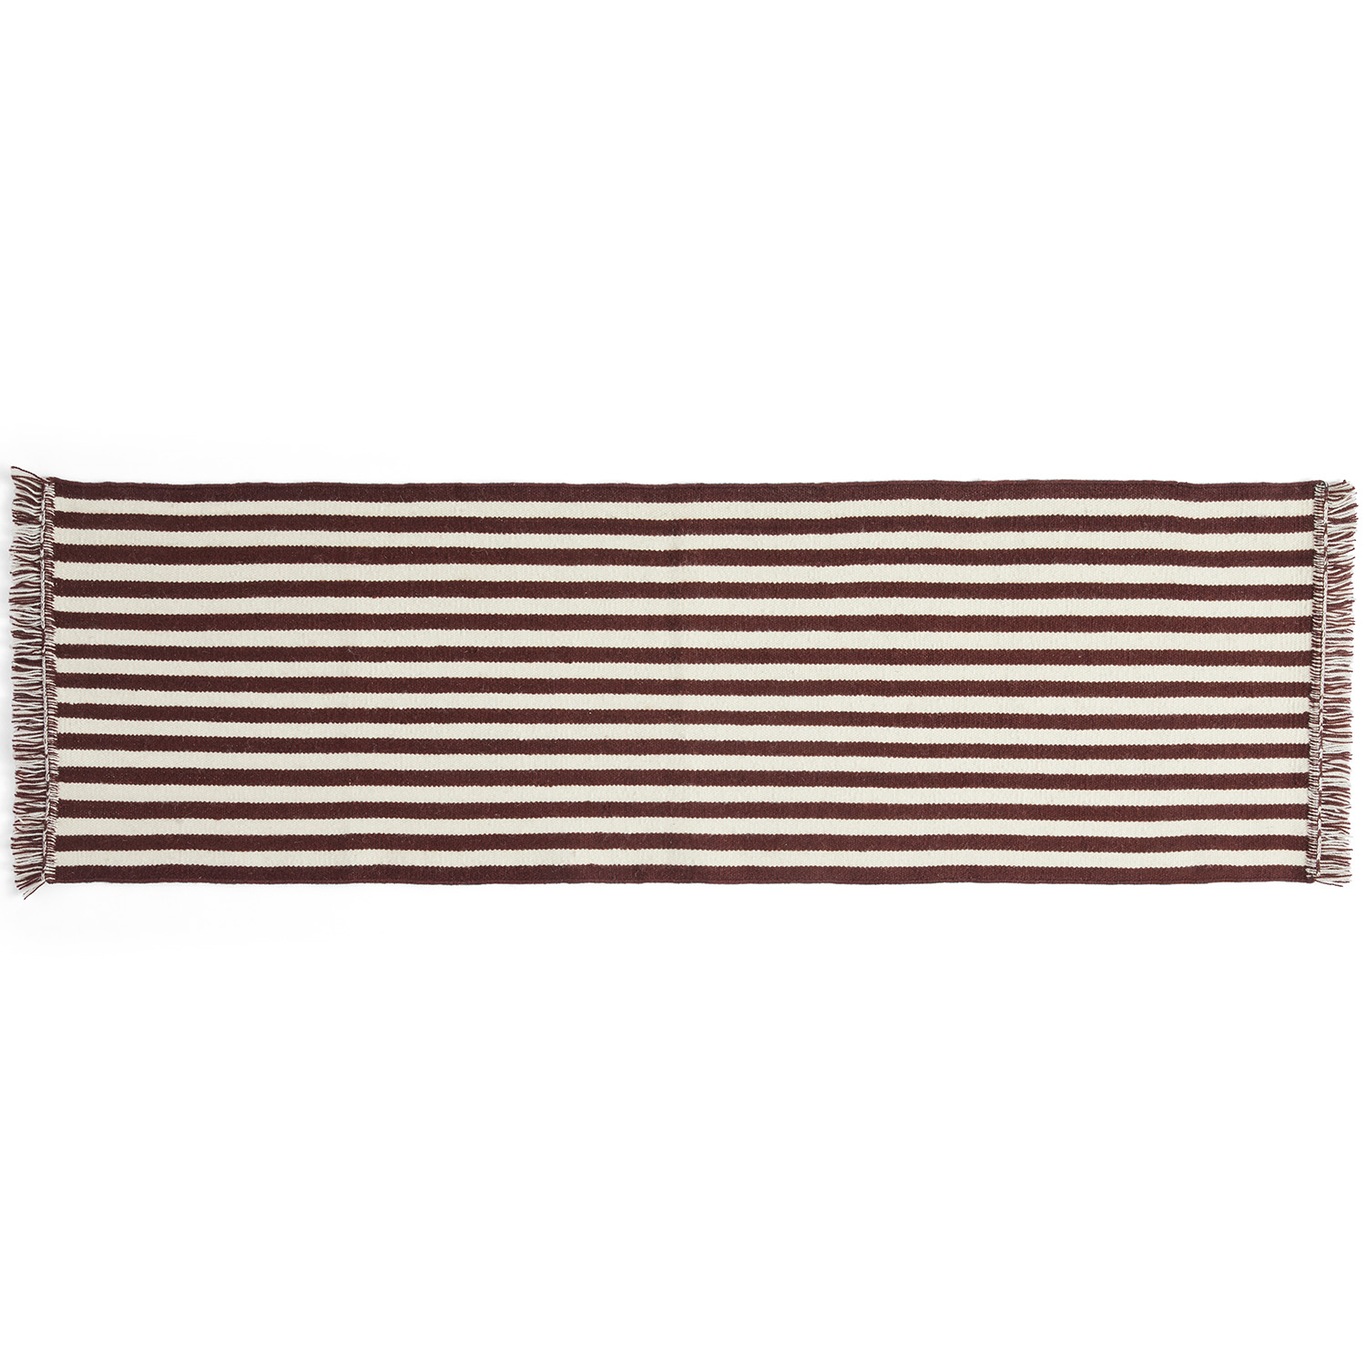 Stripes and Stripes Teppe 60x200 cm, Cream